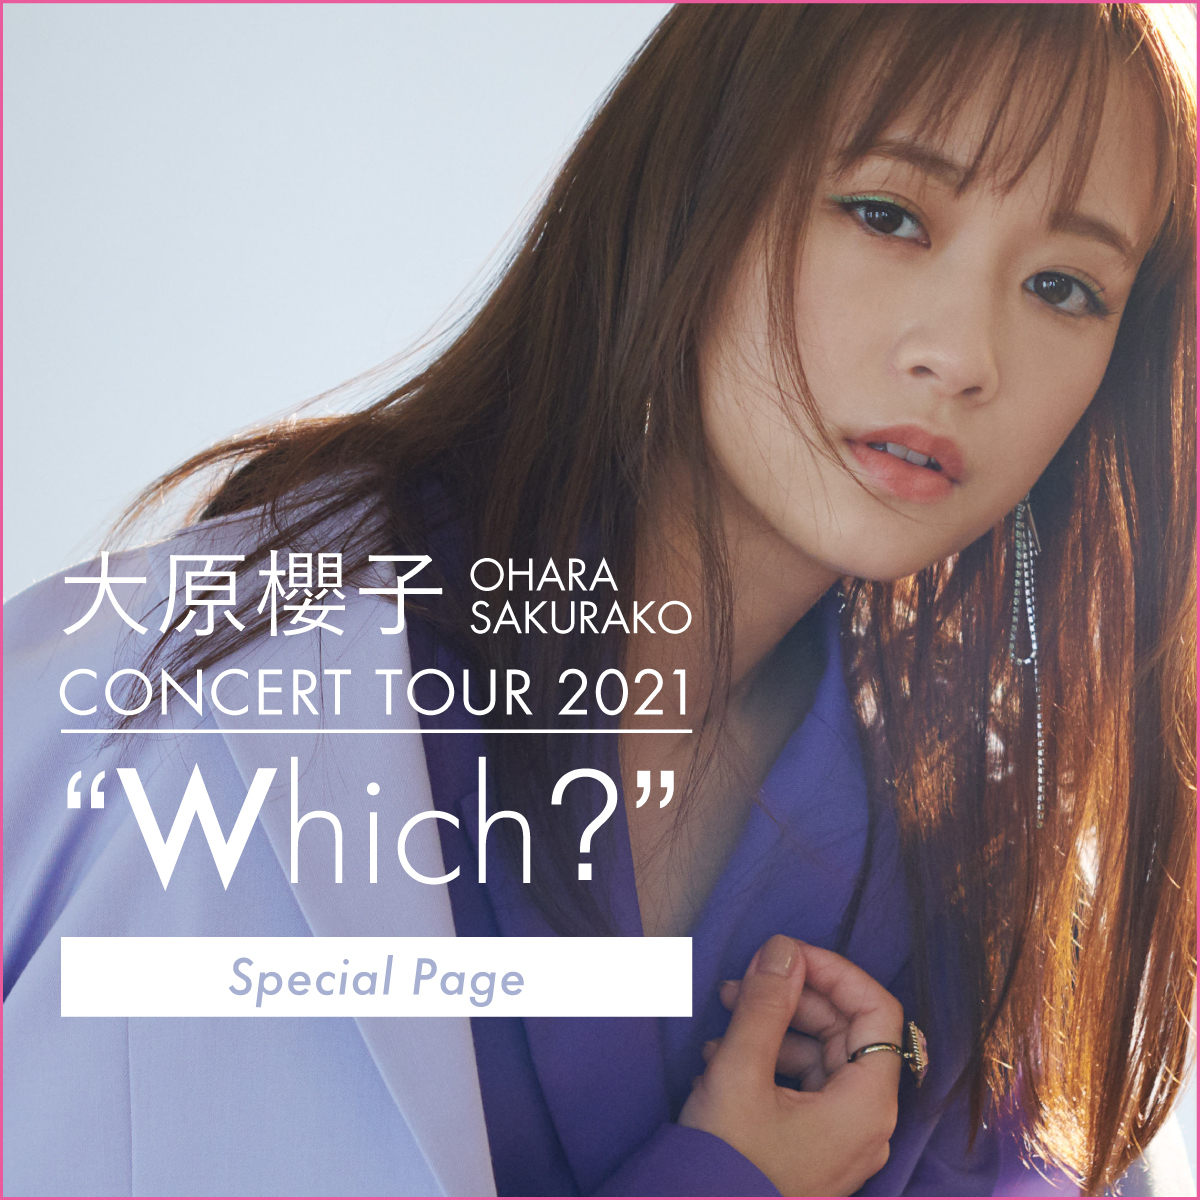 大原櫻子 CONCERT TOUR 2021“Which?” ｣スペシャル | SAKURAKO OHARA OFFICIAL SITE